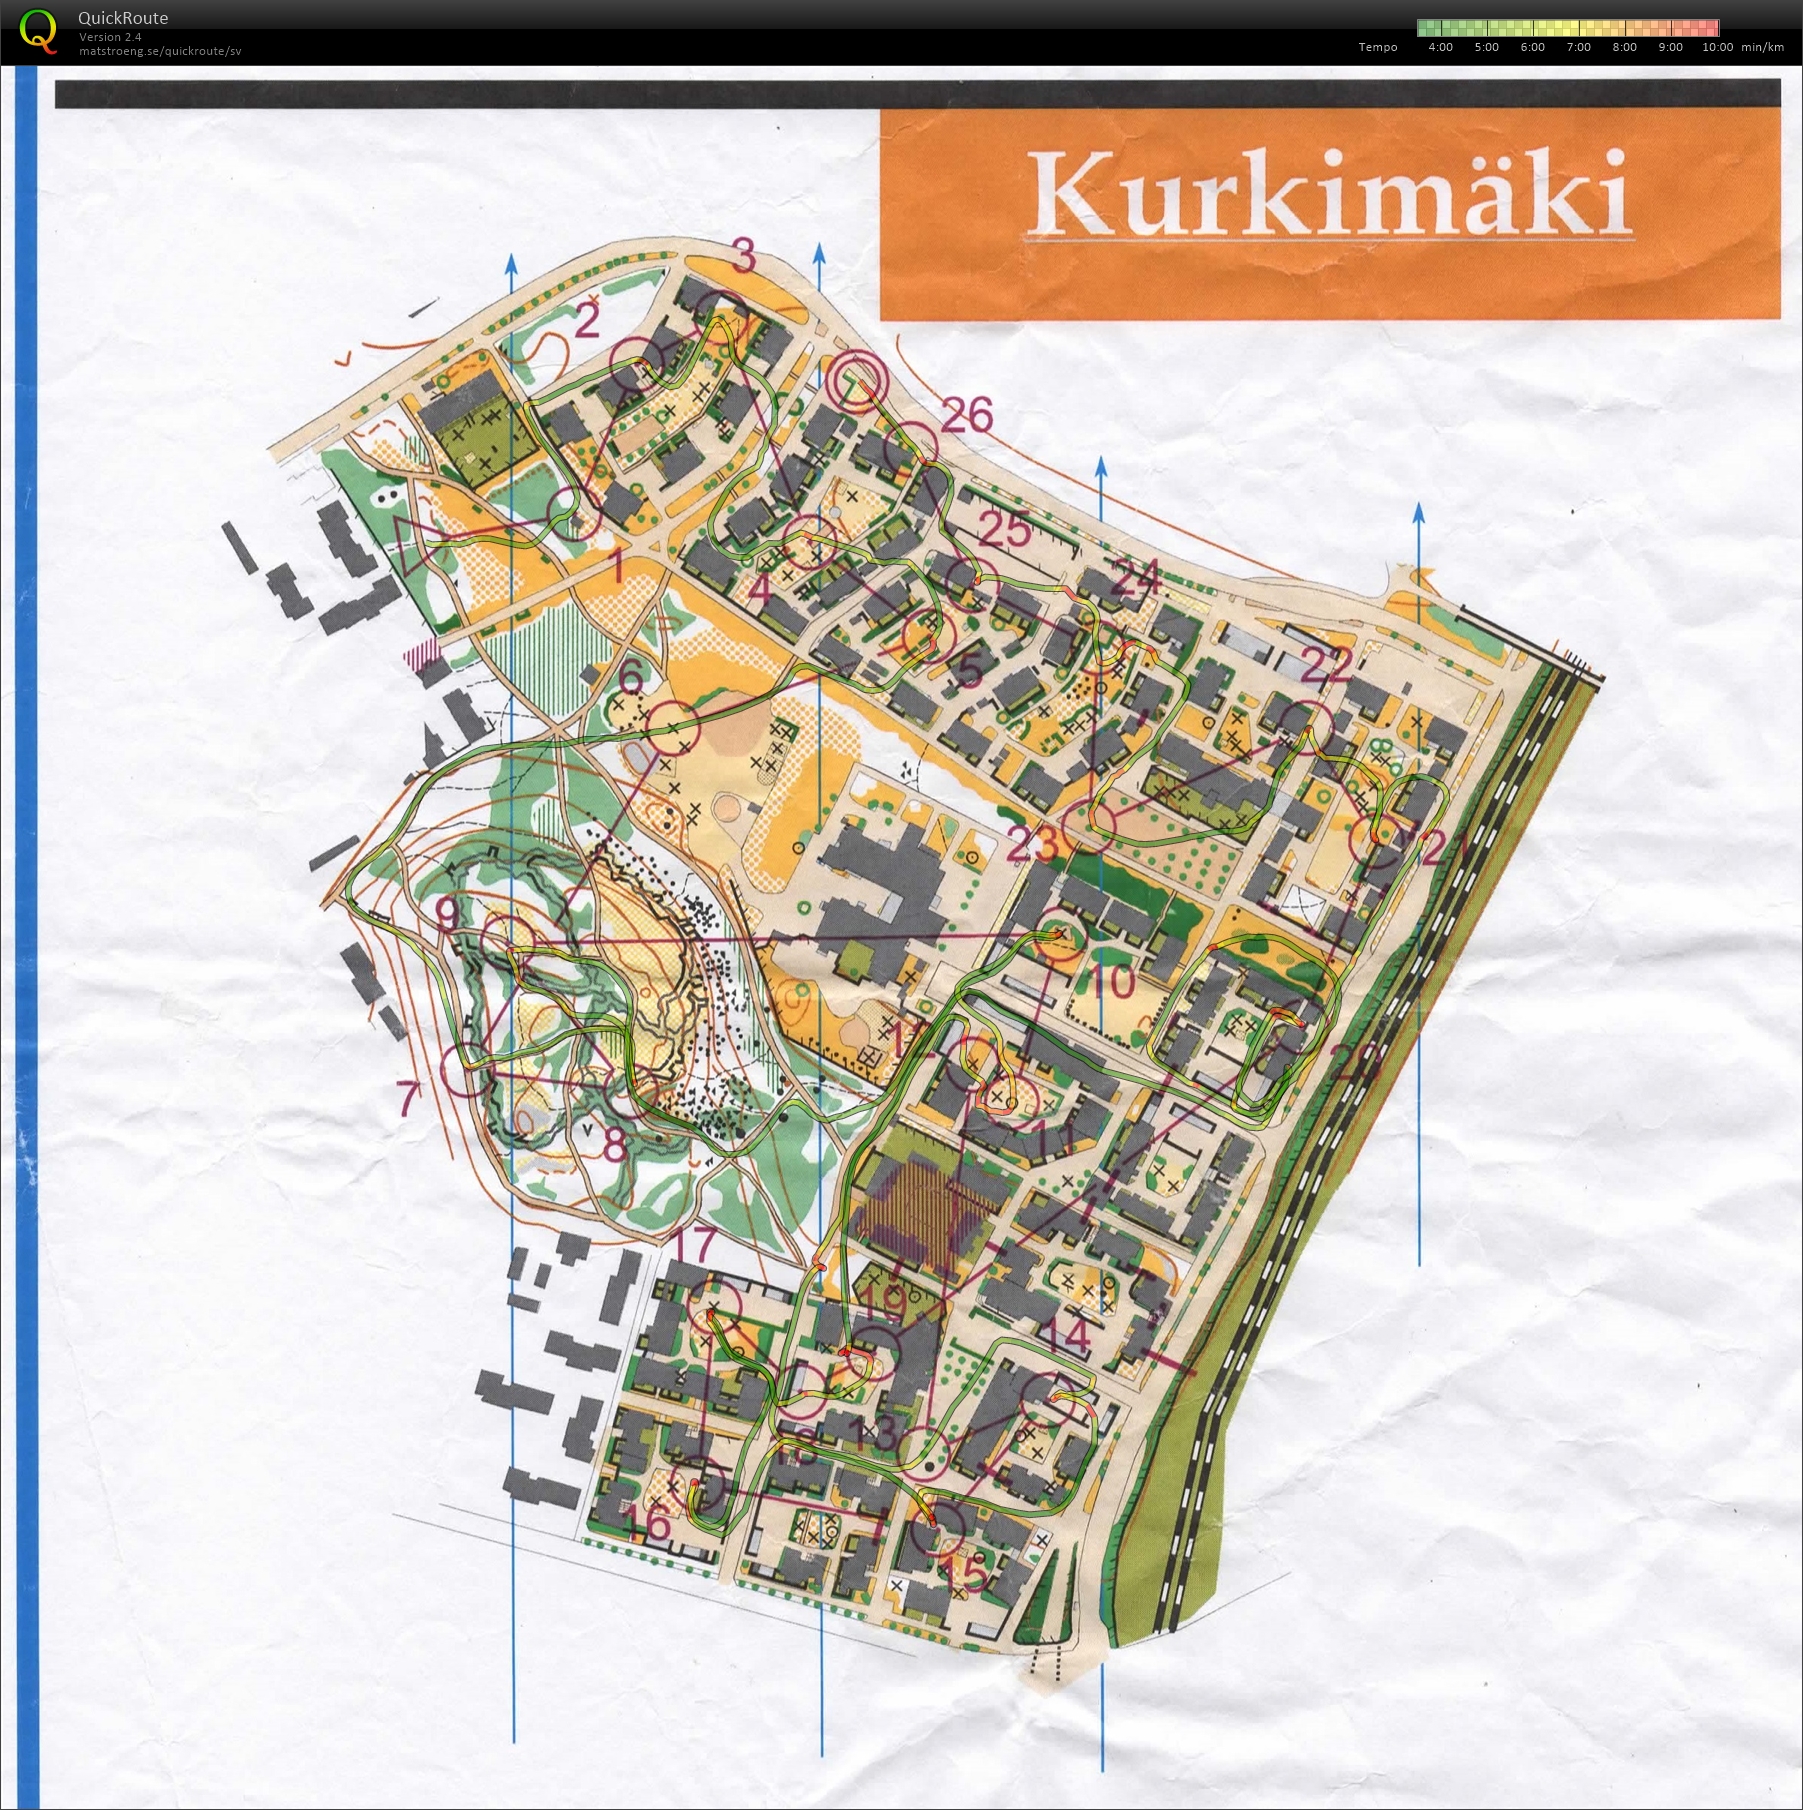 Kurkimäki sprint (17/12/2015)